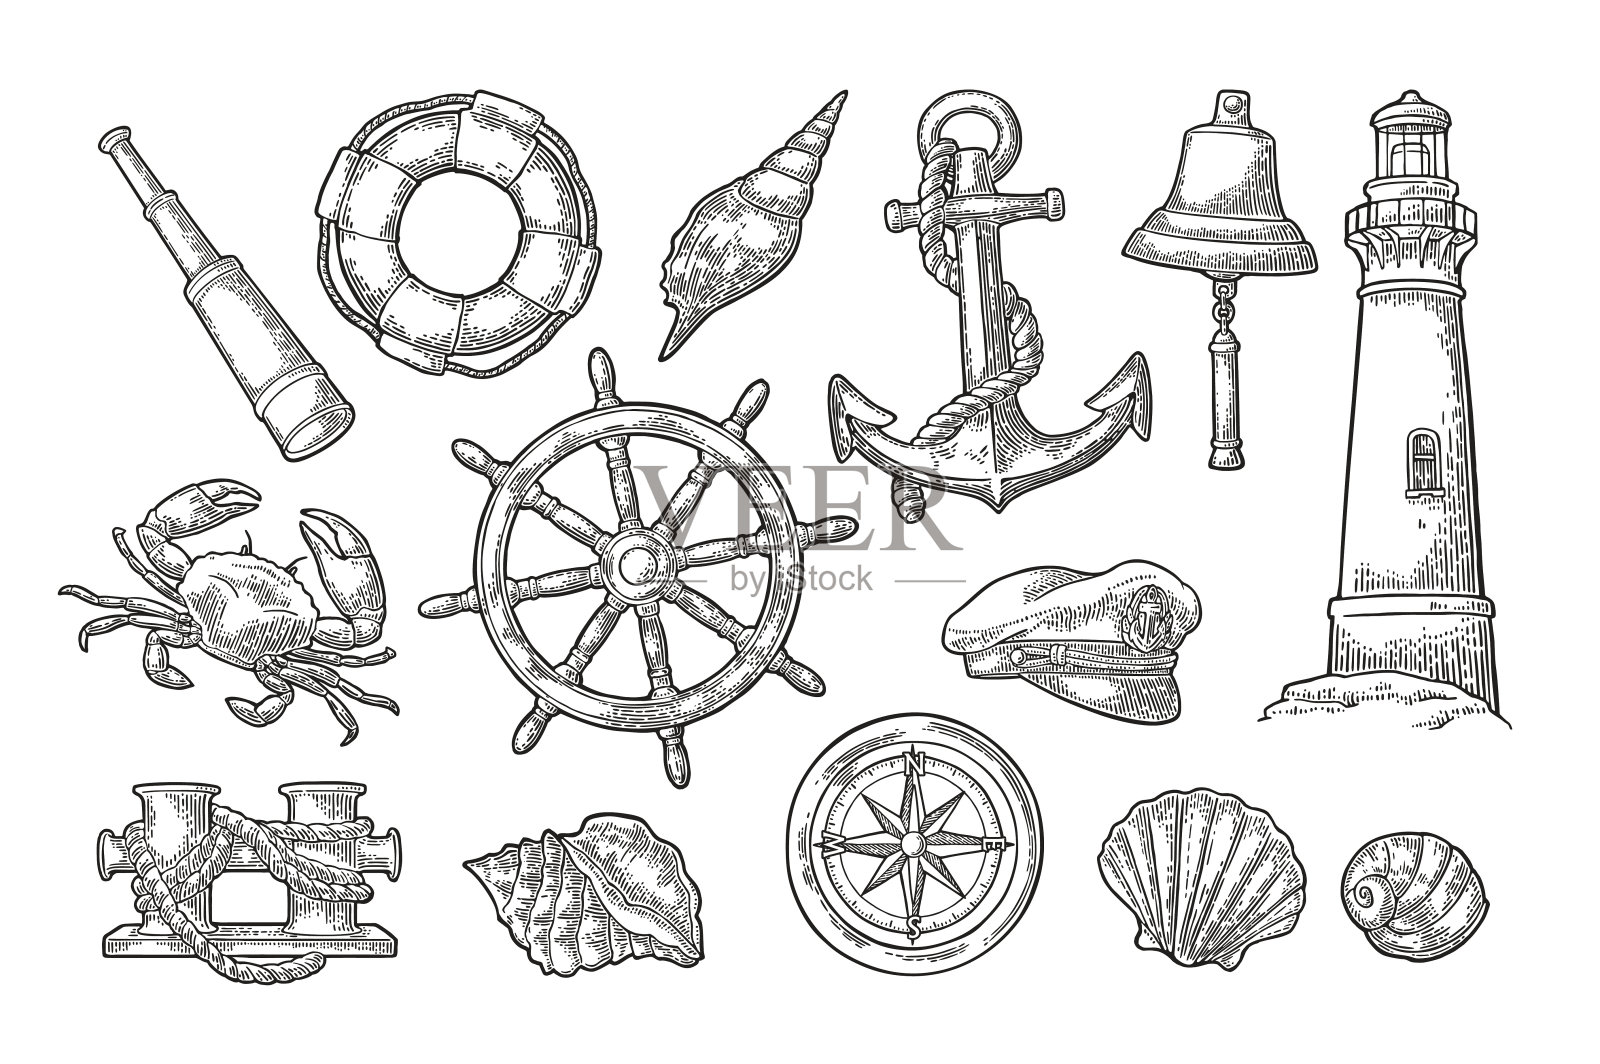 锚，轮，系柱，帽子，罗盘玫瑰，贝壳，螃蟹，灯塔雕刻插画图片素材